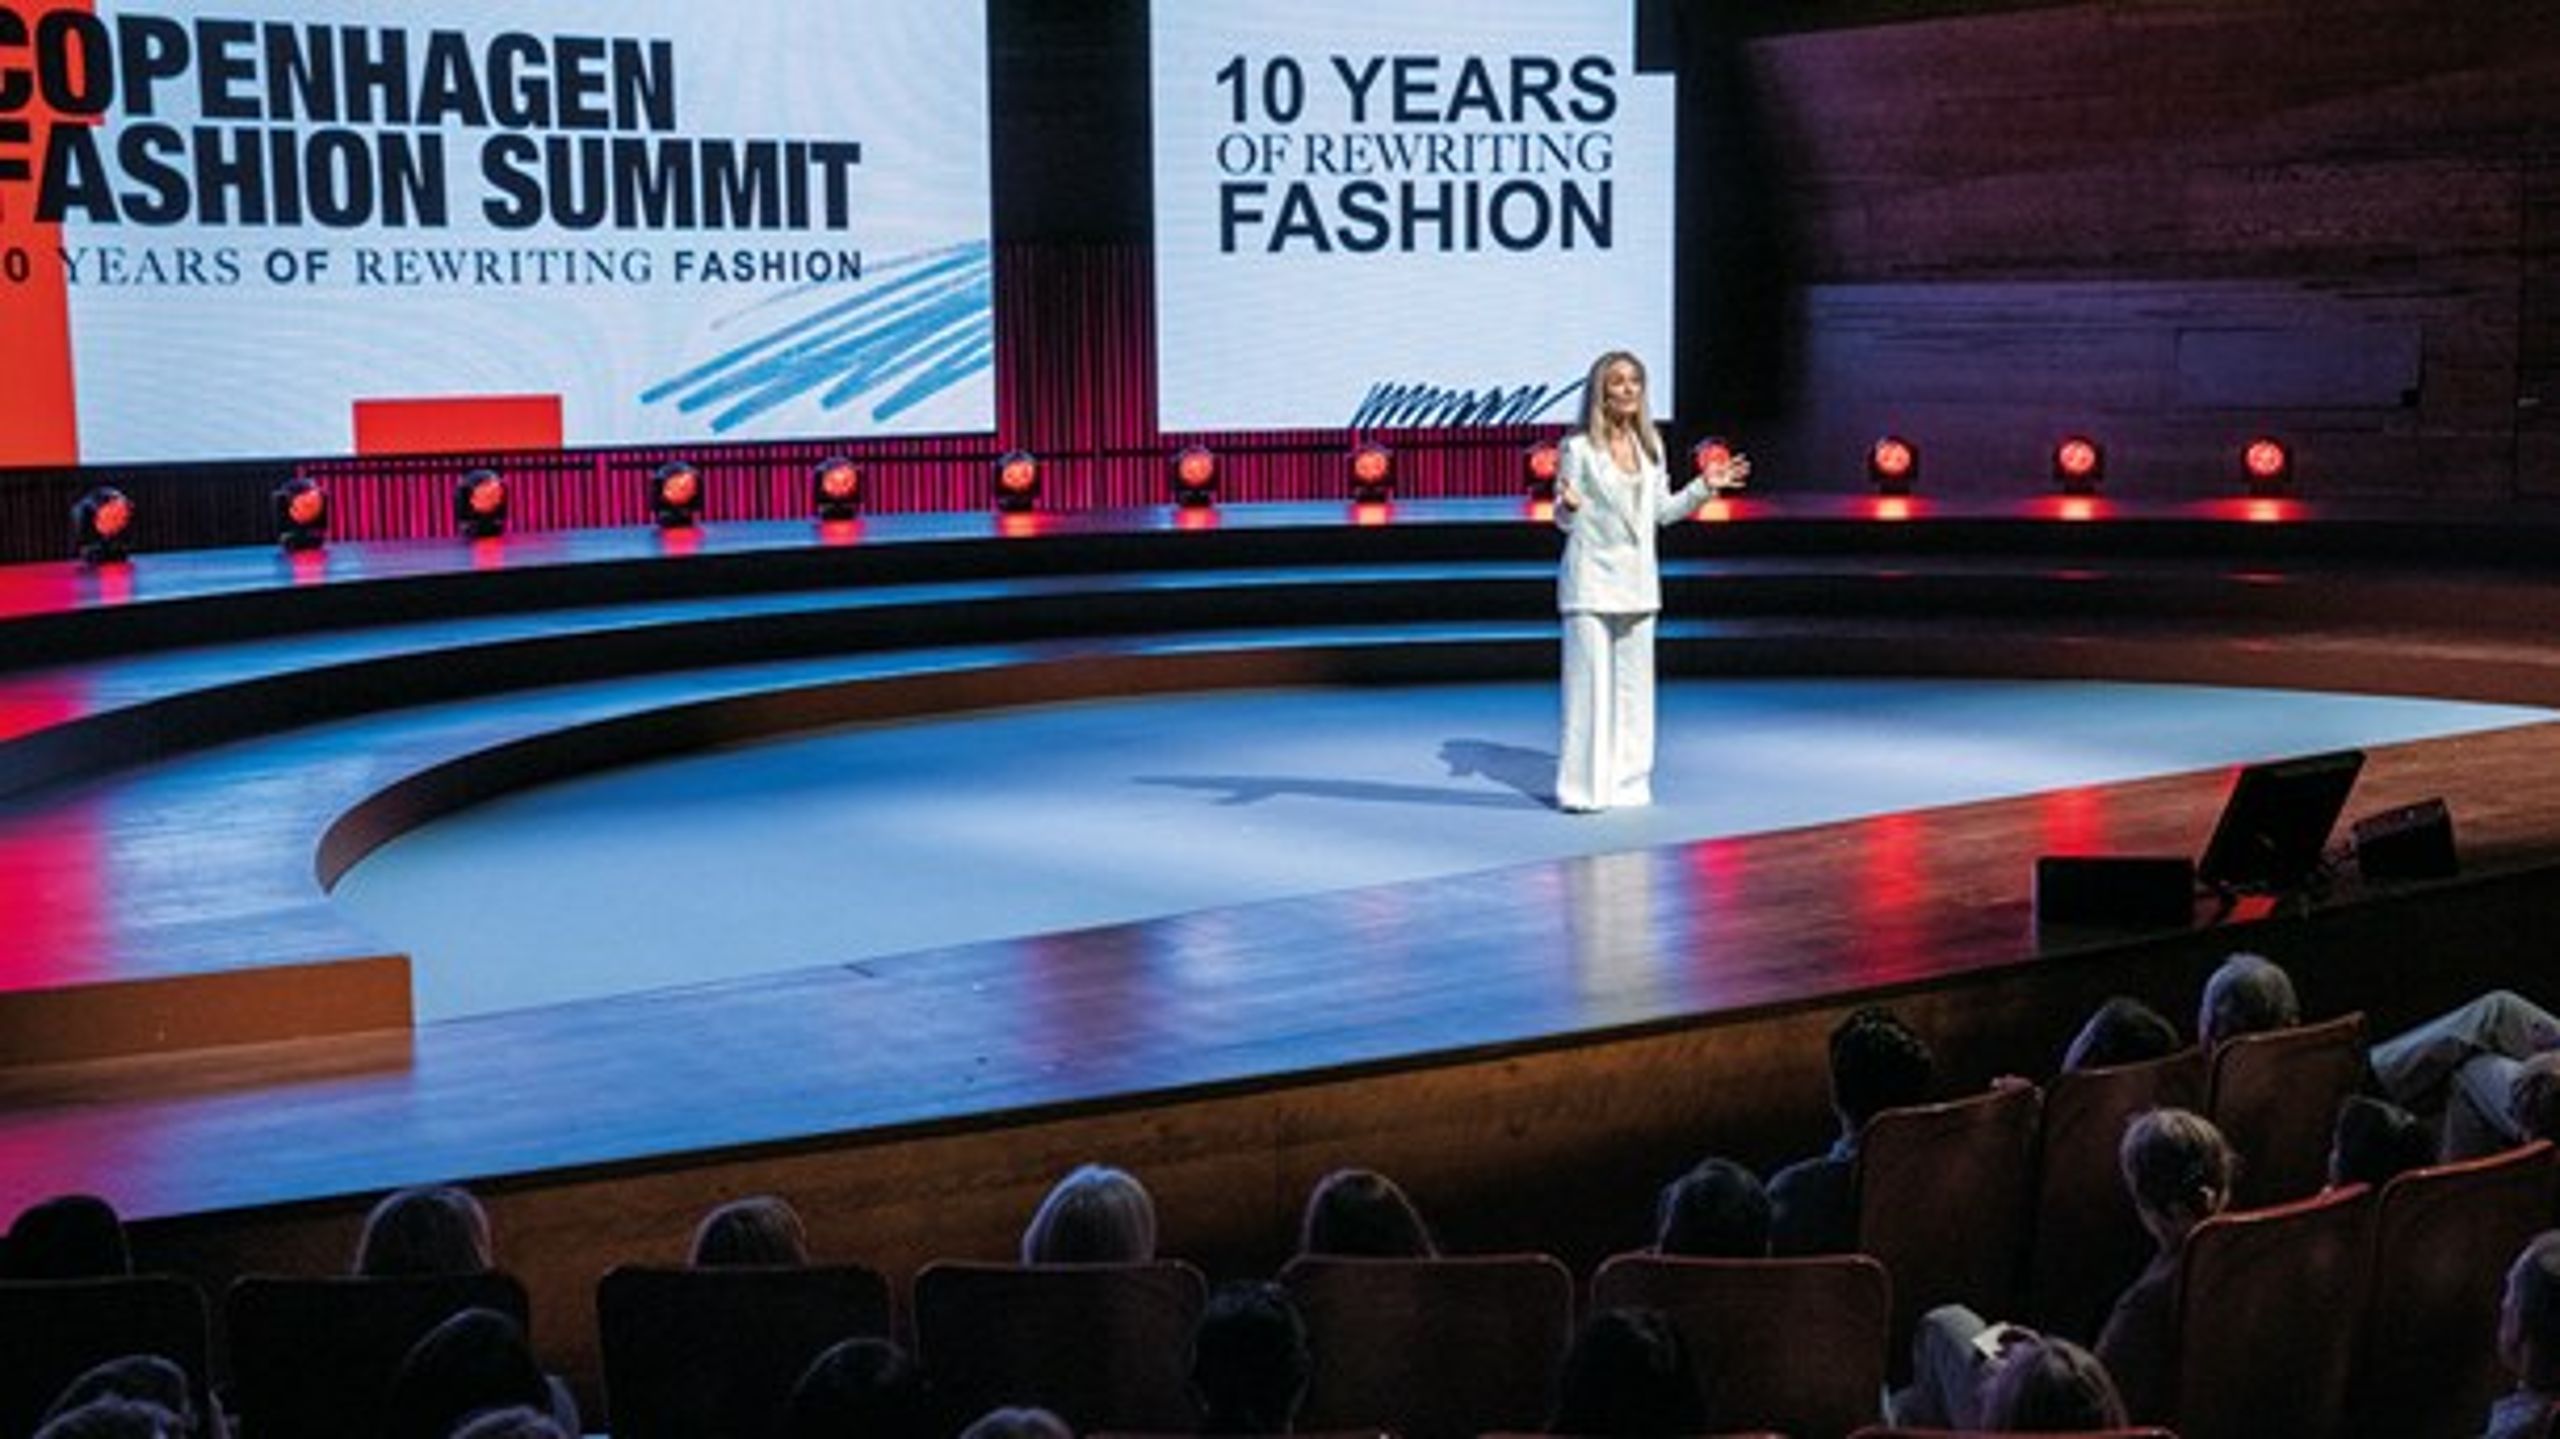 Copenhagen Fashion Summit fejrede 10-års jubilæum 15. maj.
På scenen Eva Kruse, CEO for Global Fashion Agenda, der står bag modens
klimatopmøde.